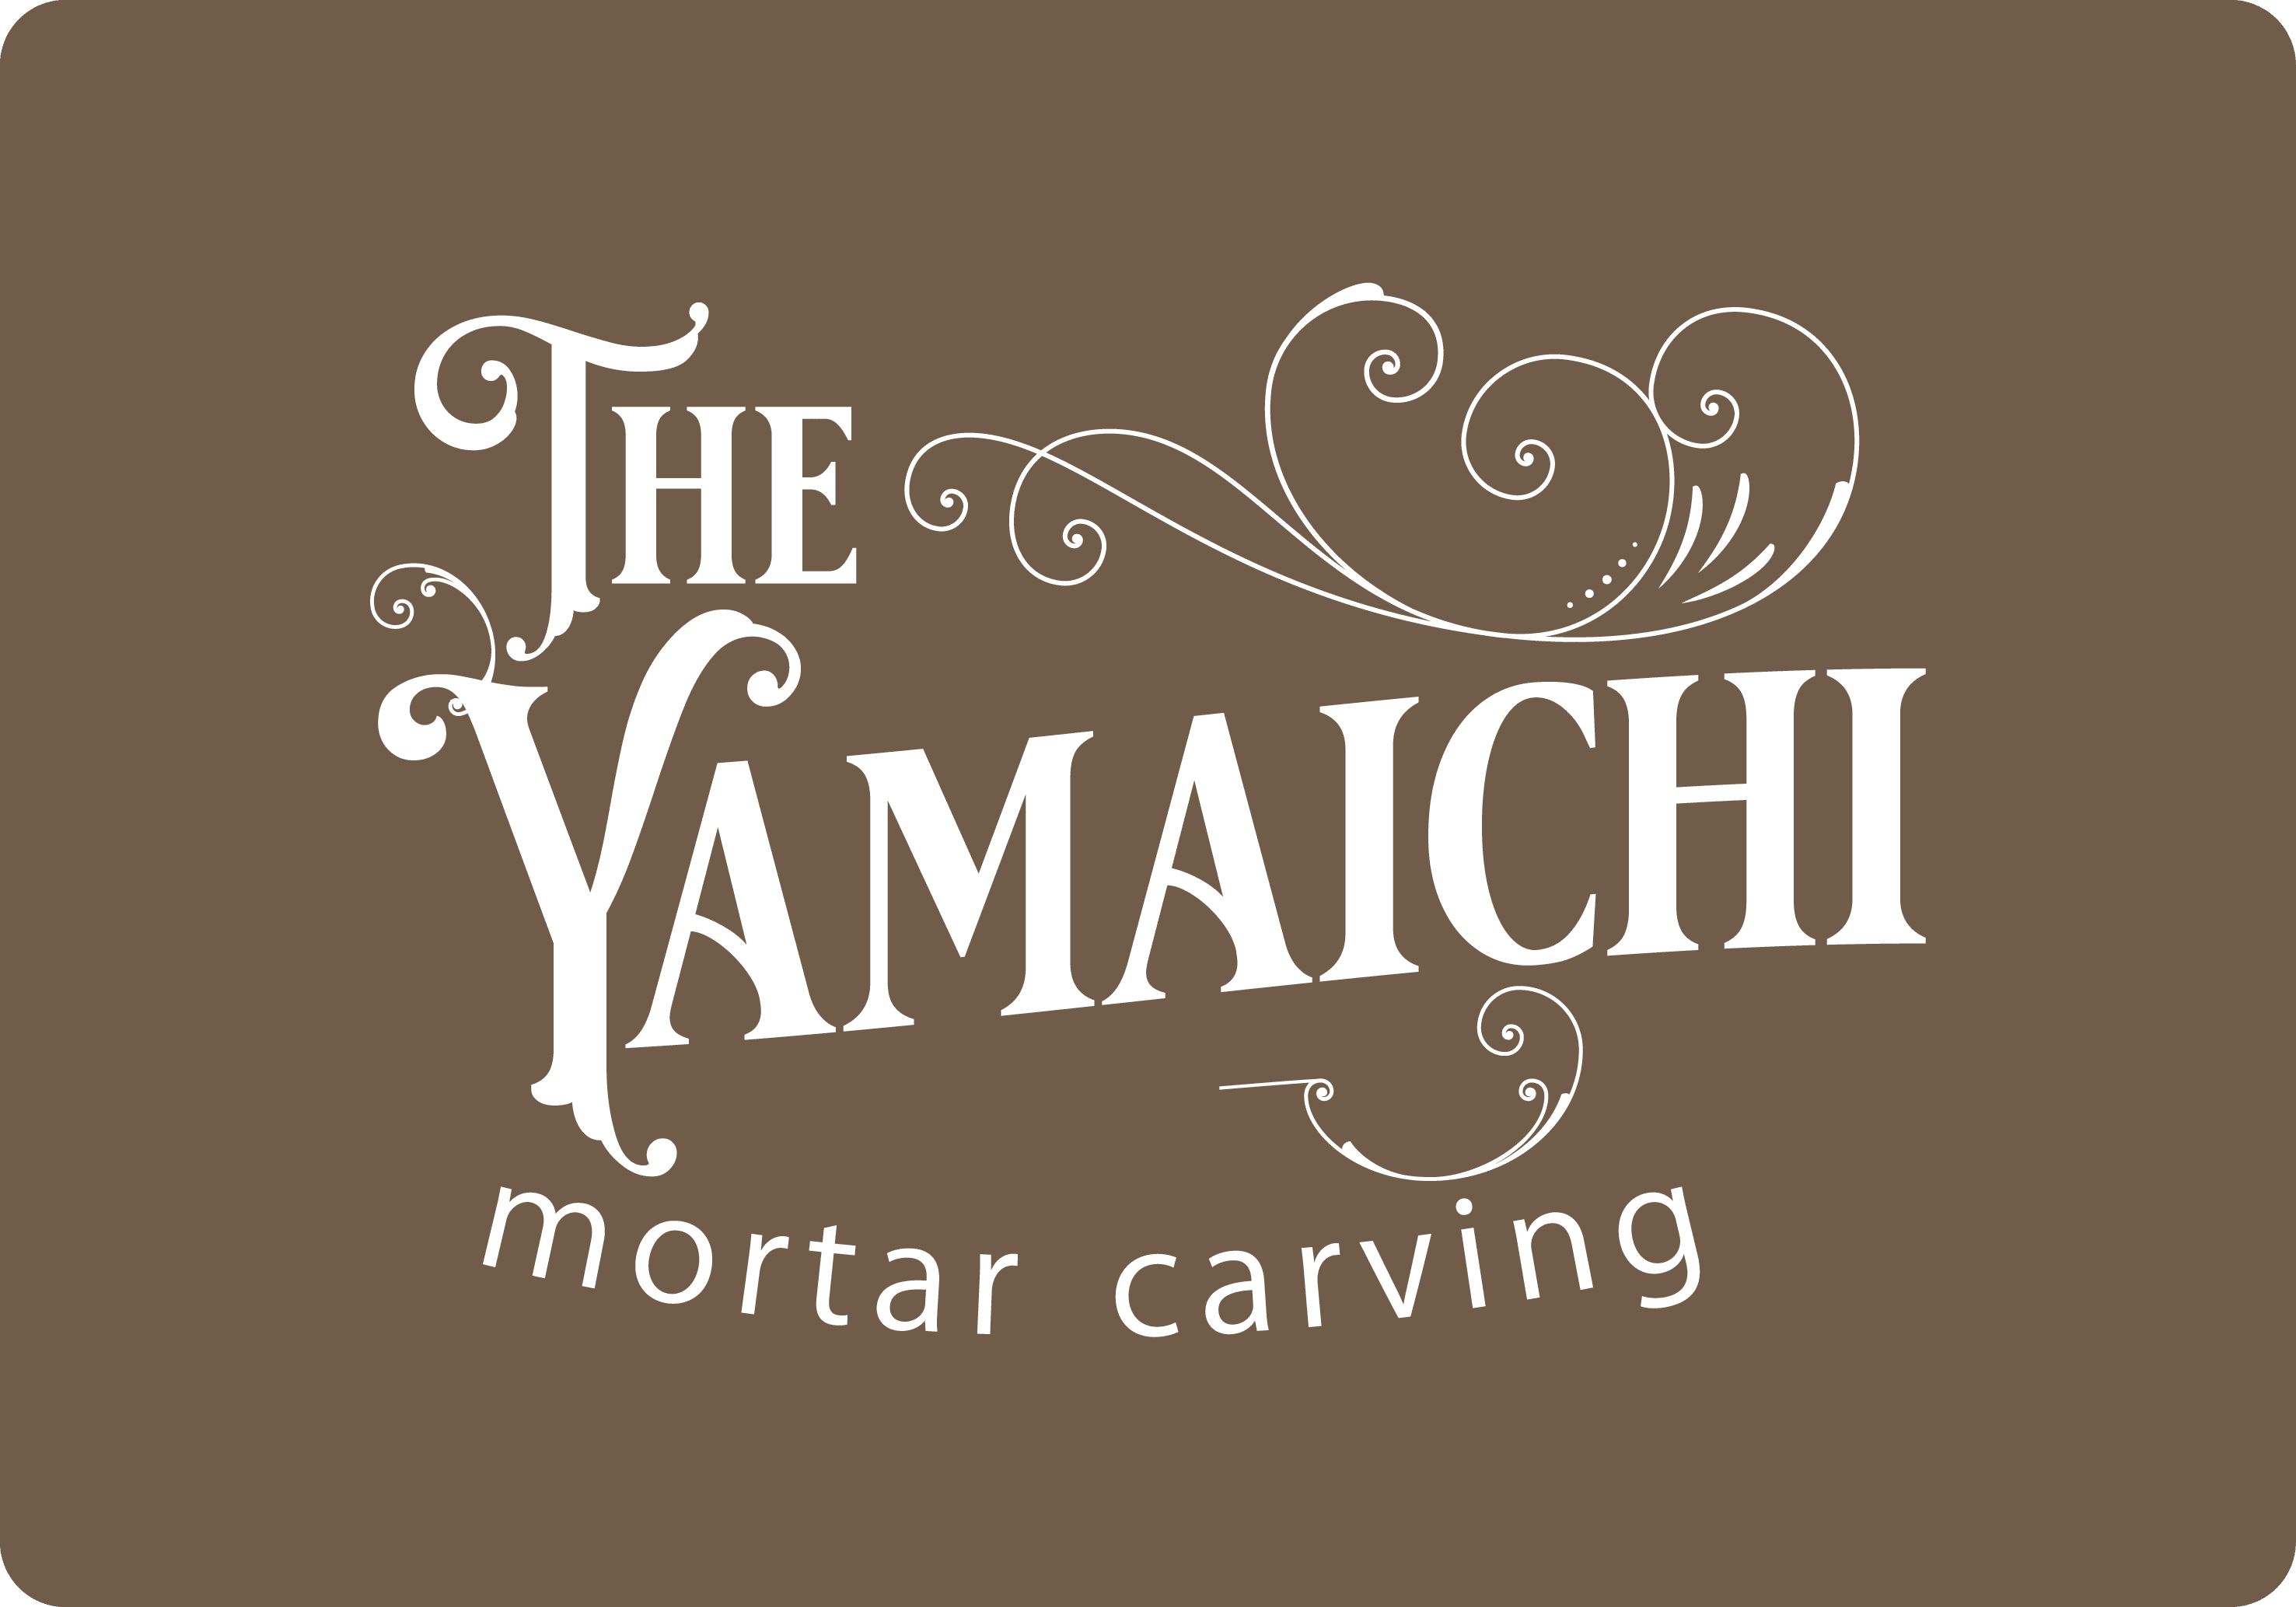 YAMAICHI mortar carving